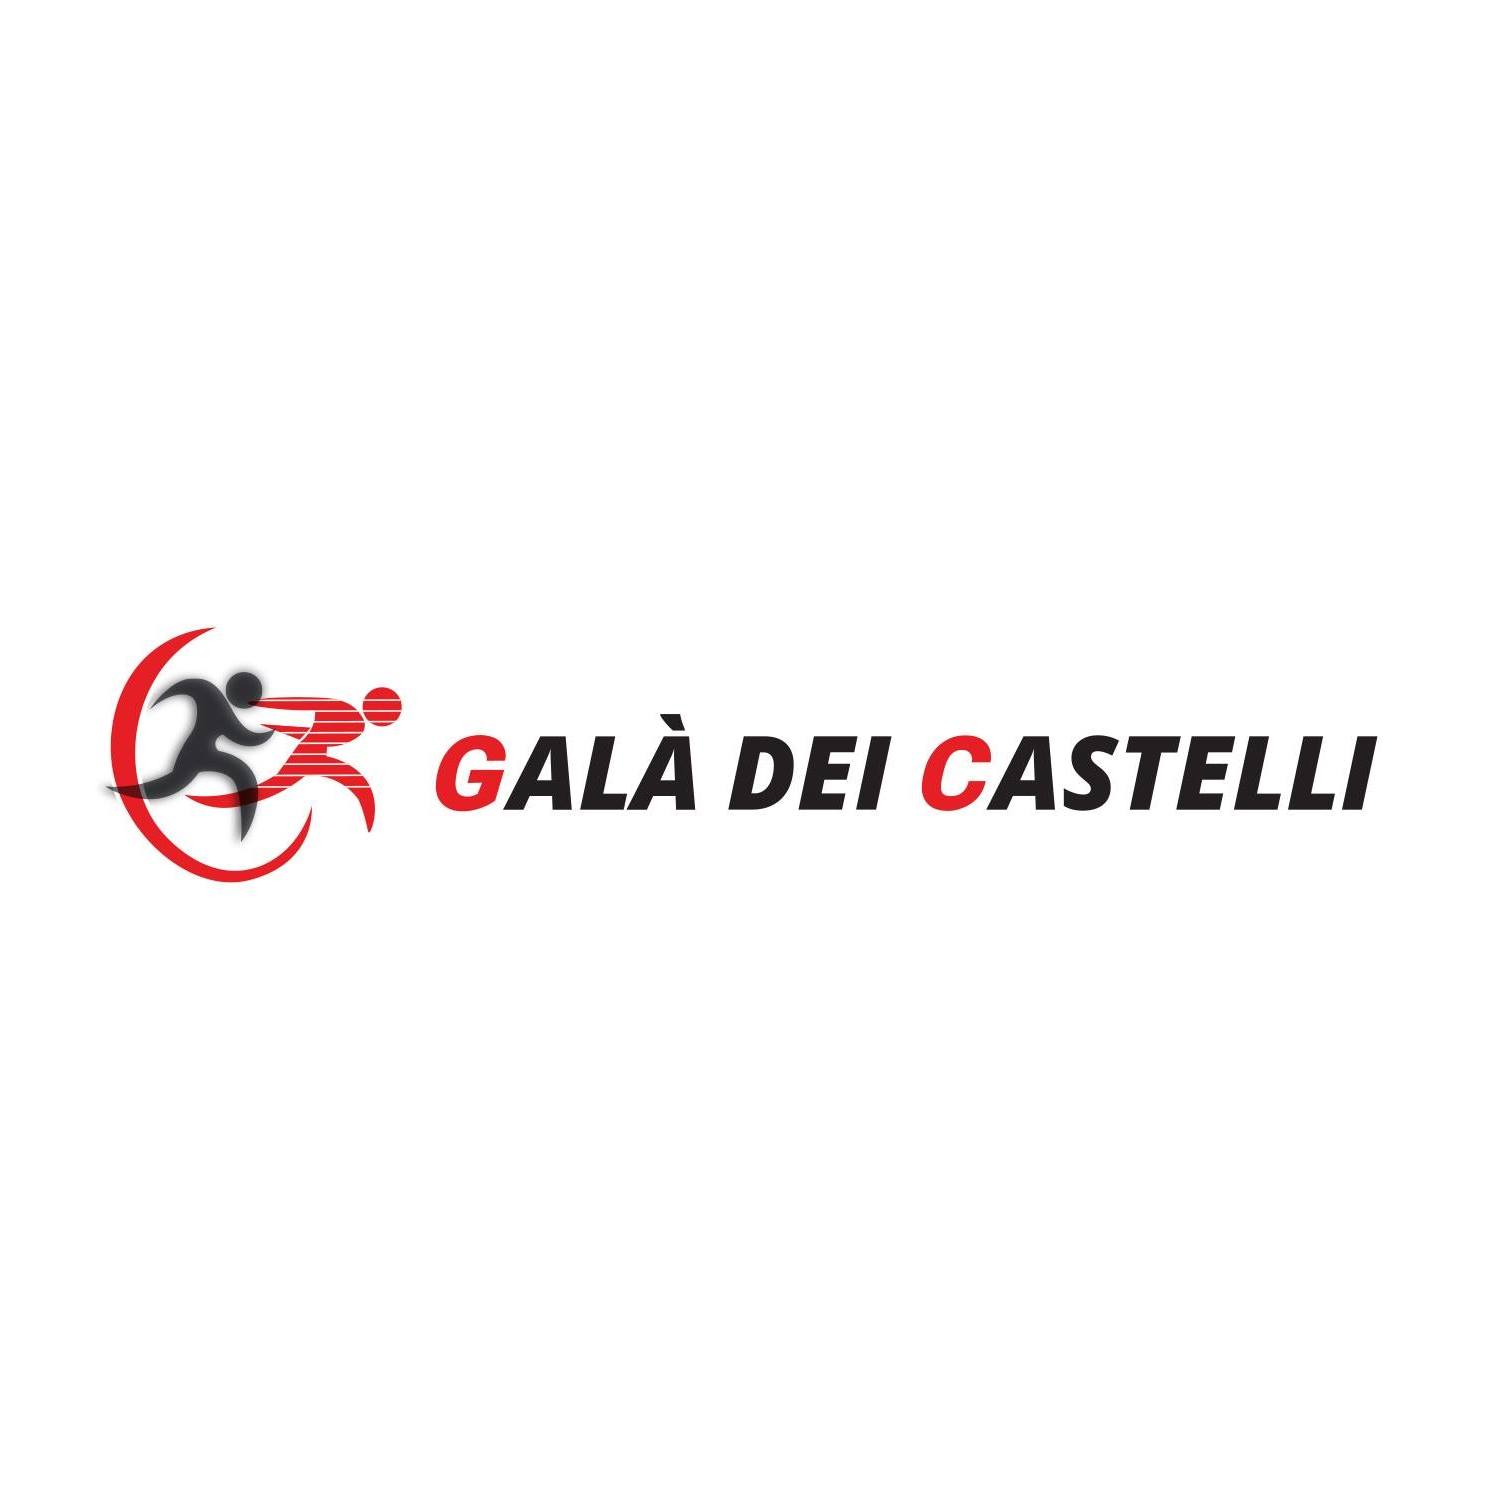 Gala dei Casteili Logo